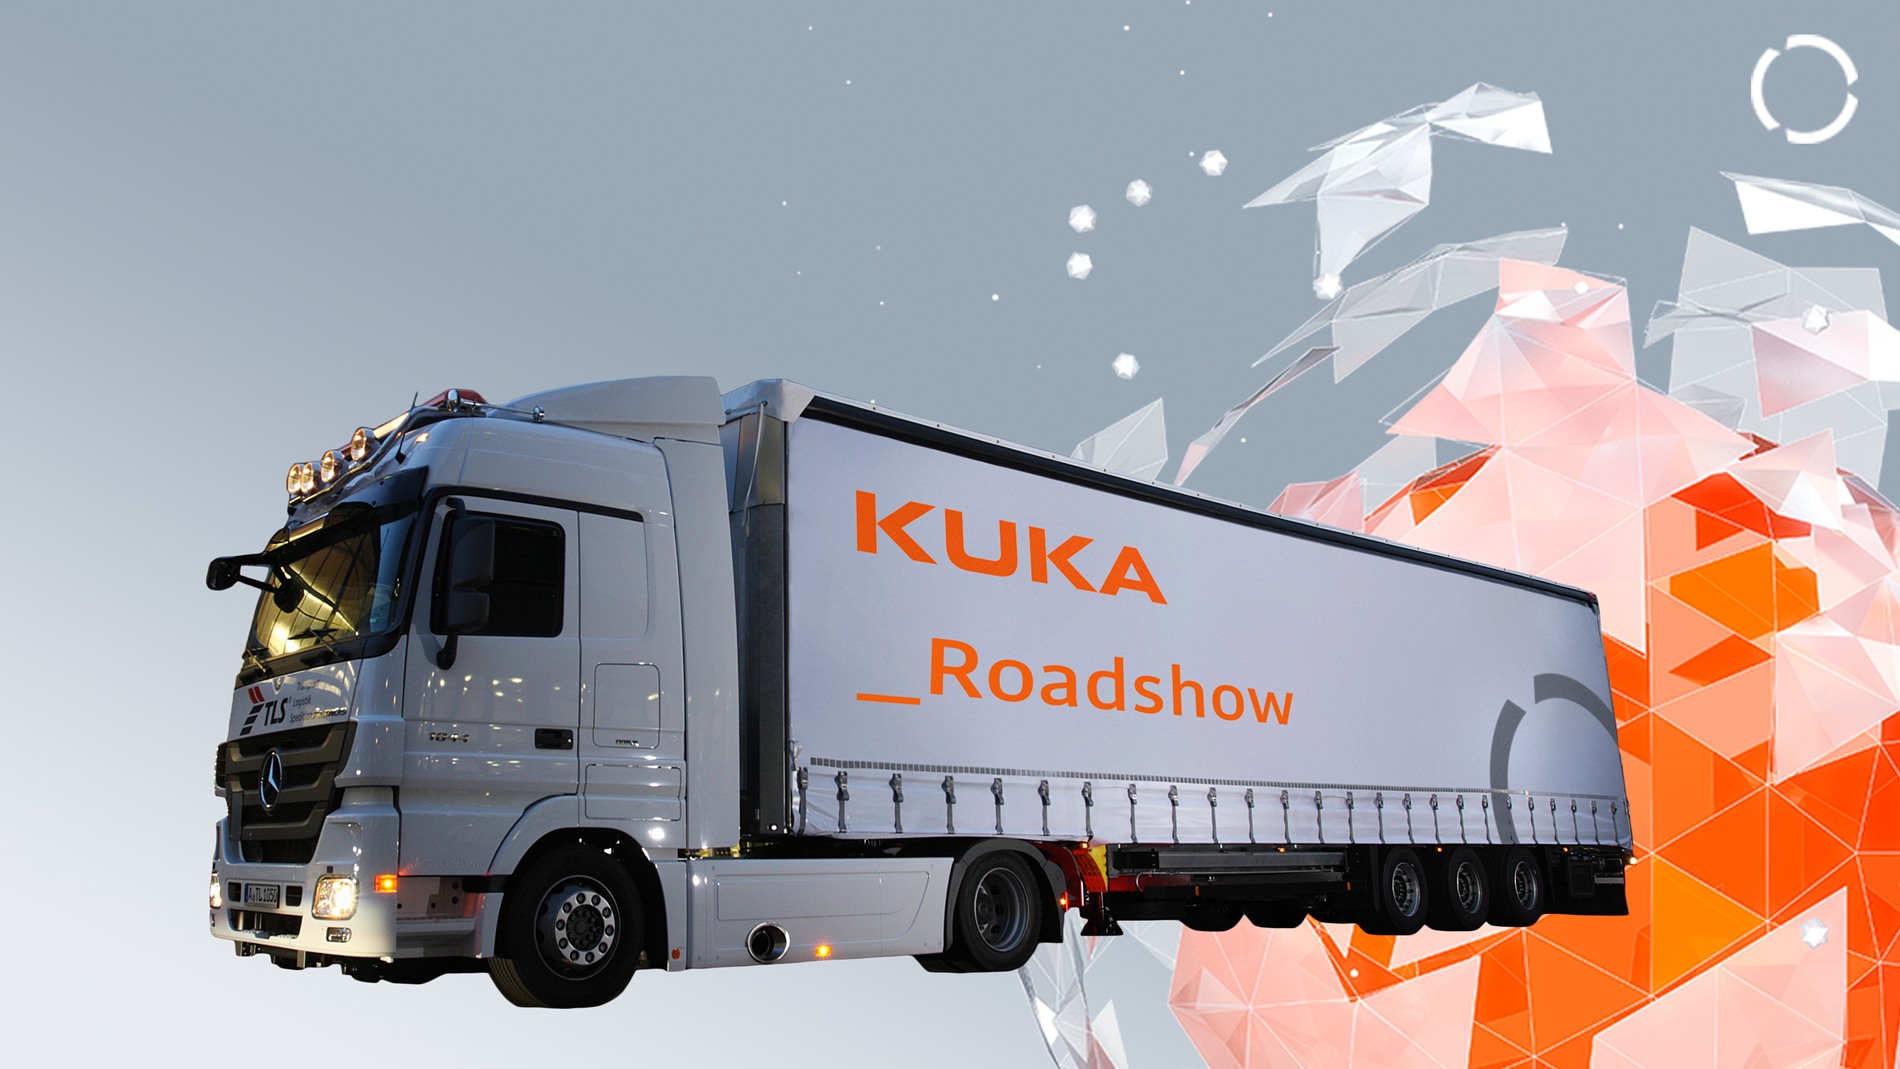 KUKA Roadshow 